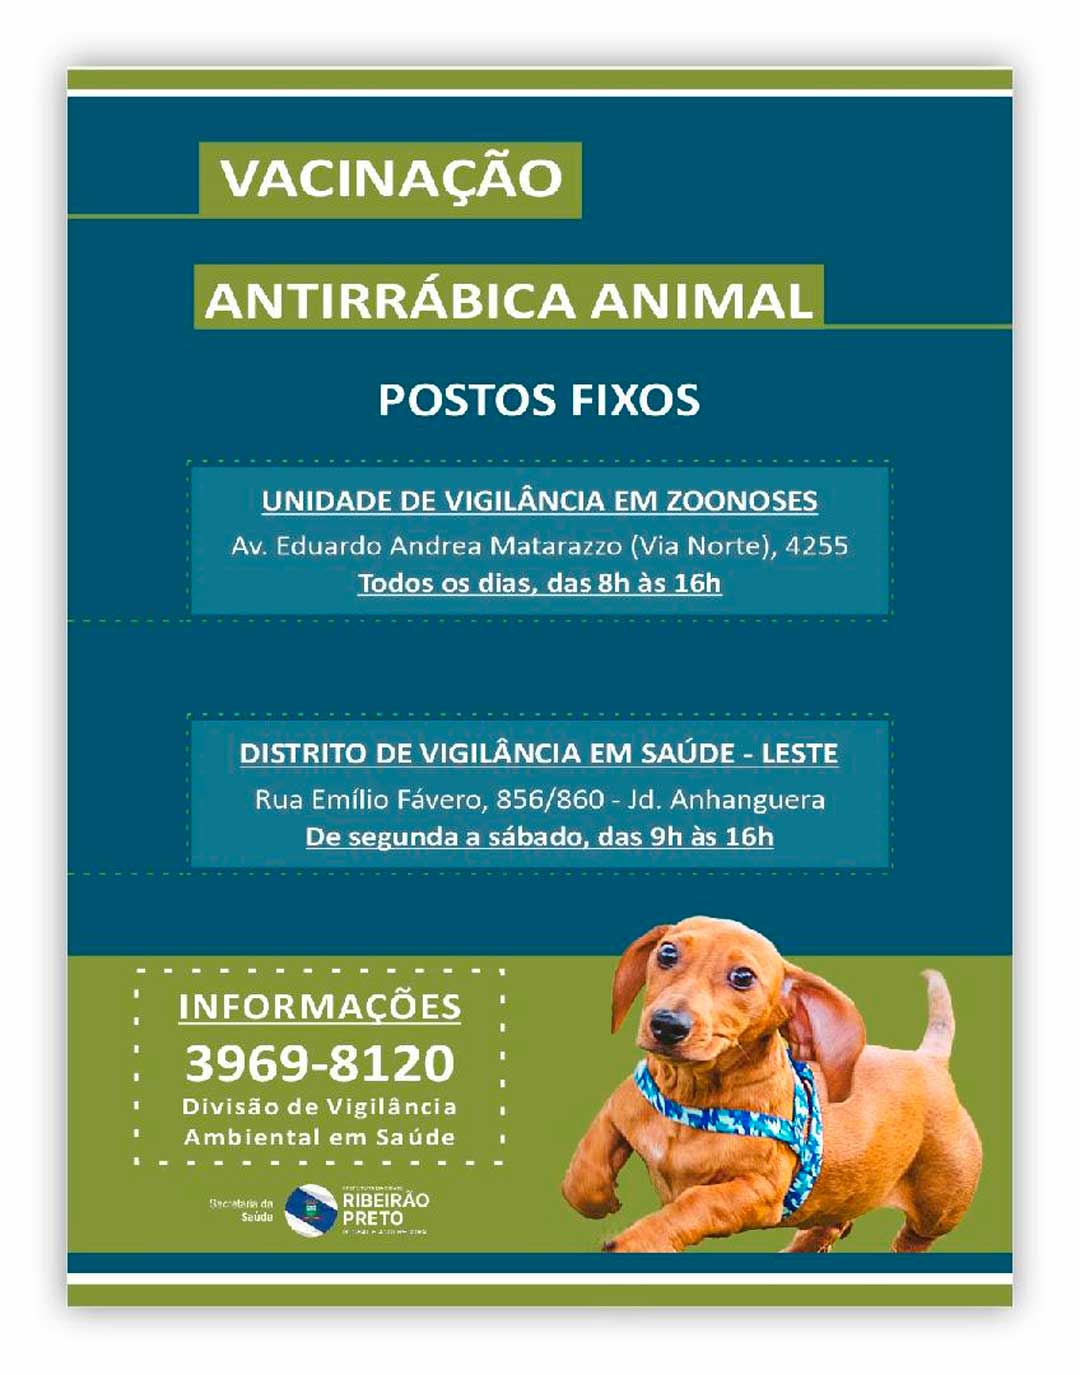 Distrito Leste, no Jardim Anhanguera, é o local fixo para vacinação antirrábica este mês